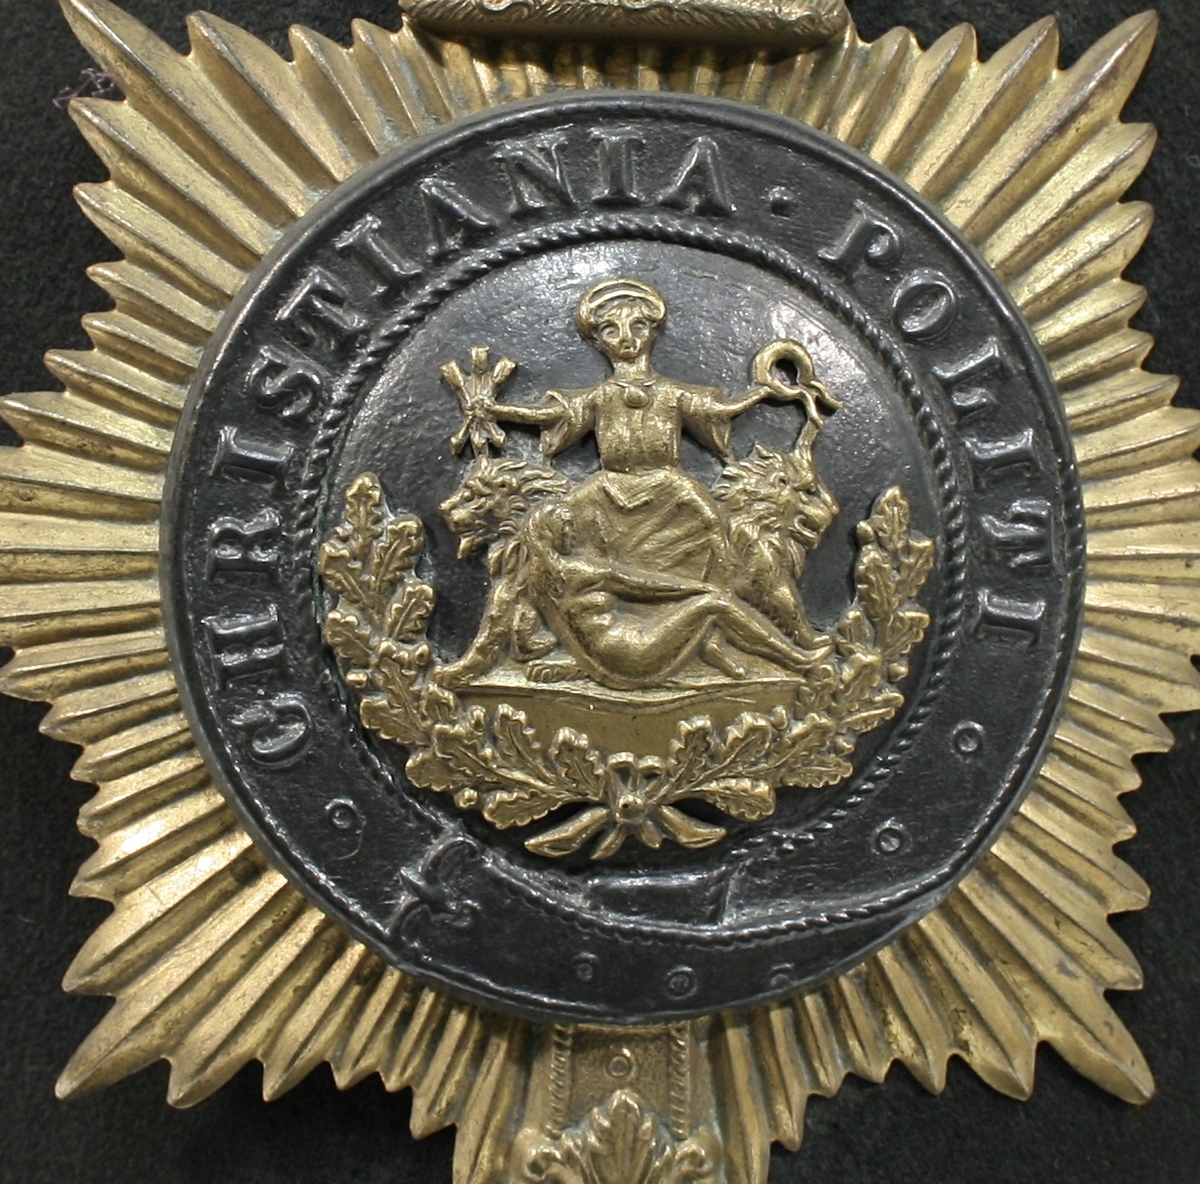 Britiskinspirert hjelmform "Bobby typen". Foran er Oslos byvåpen omringet av belte og stjerne, med krone over. På toppen er en rose av metall.